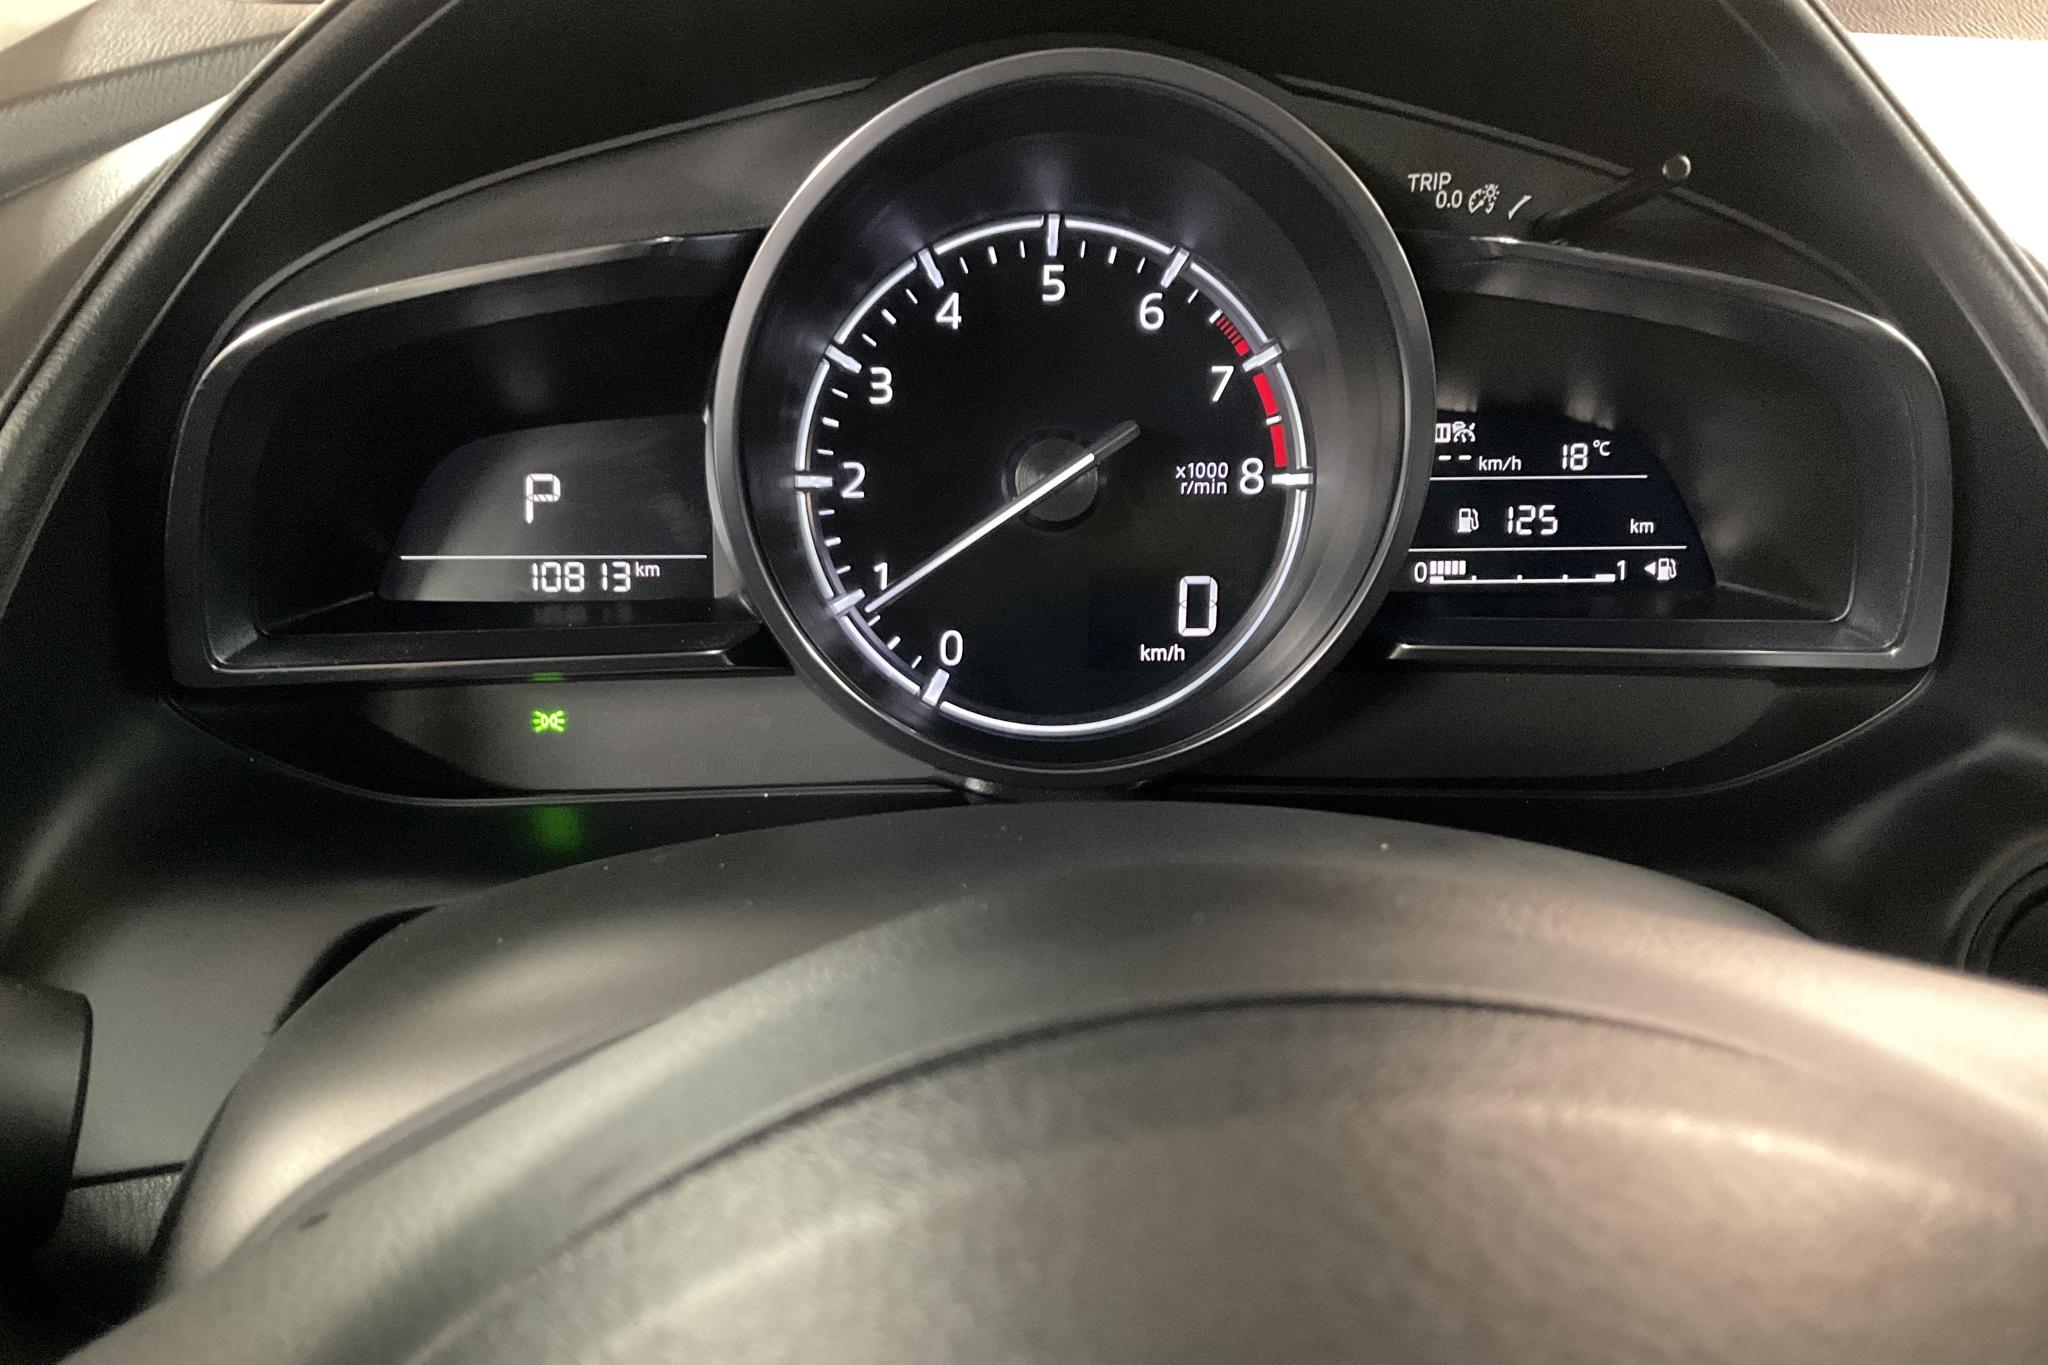 Mazda CX-3 2.0 2WD (121hk) - 1 081 mil - Automat - röd - 2019